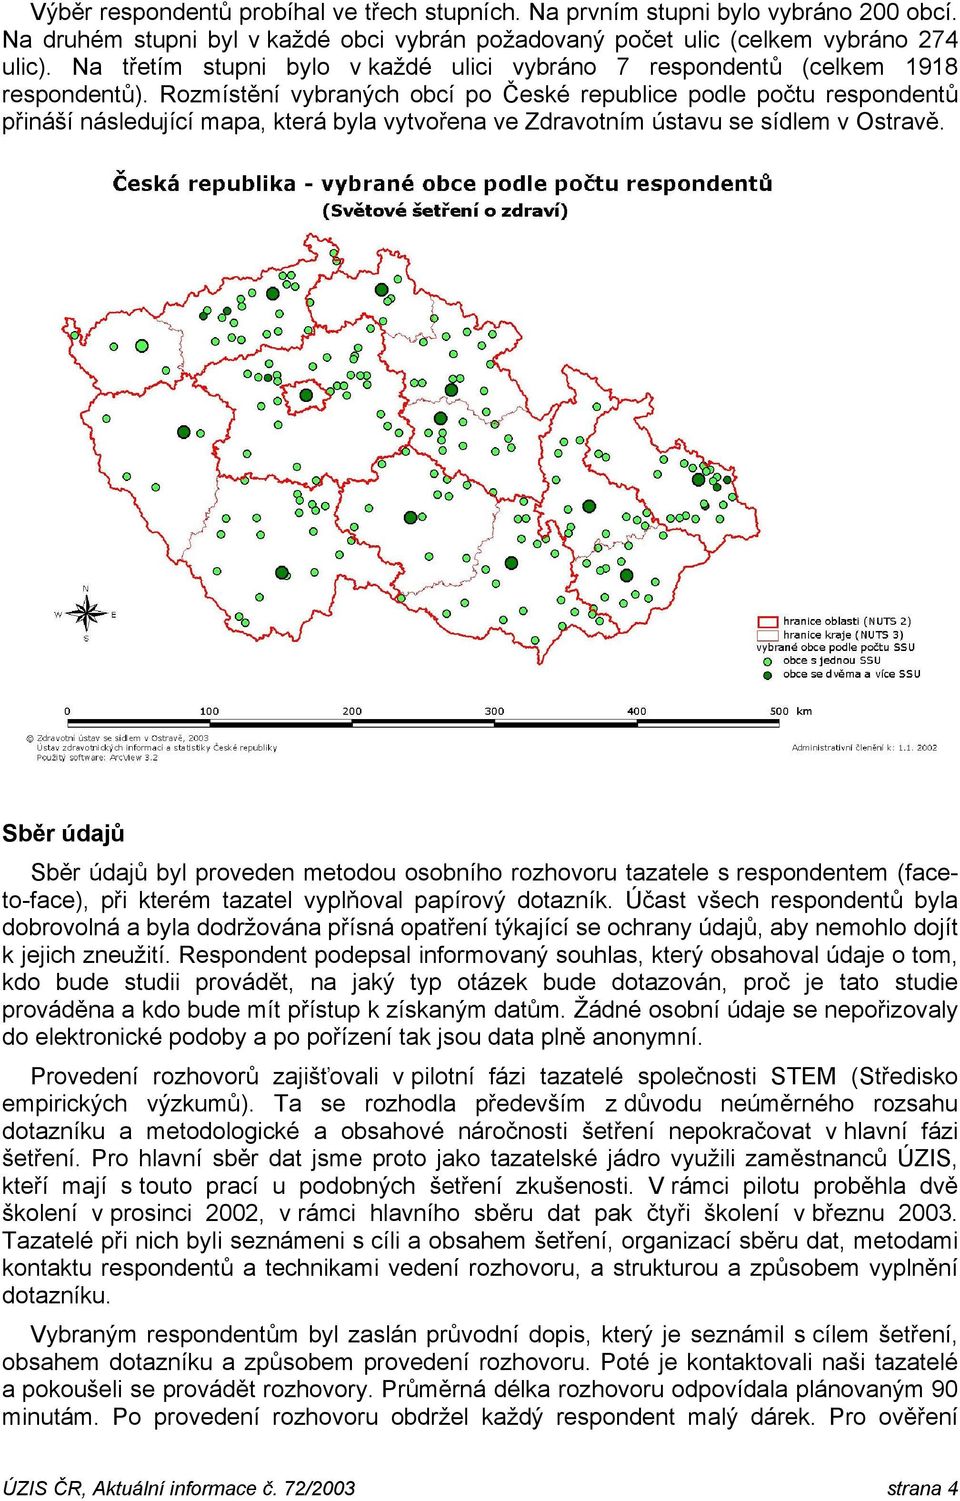 Rozmístění vybraných obcí po České republice podle počtu respondentů přináší následující mapa, která byla vytvořena ve Zdravotním ústavu se sídlem v Ostravě.